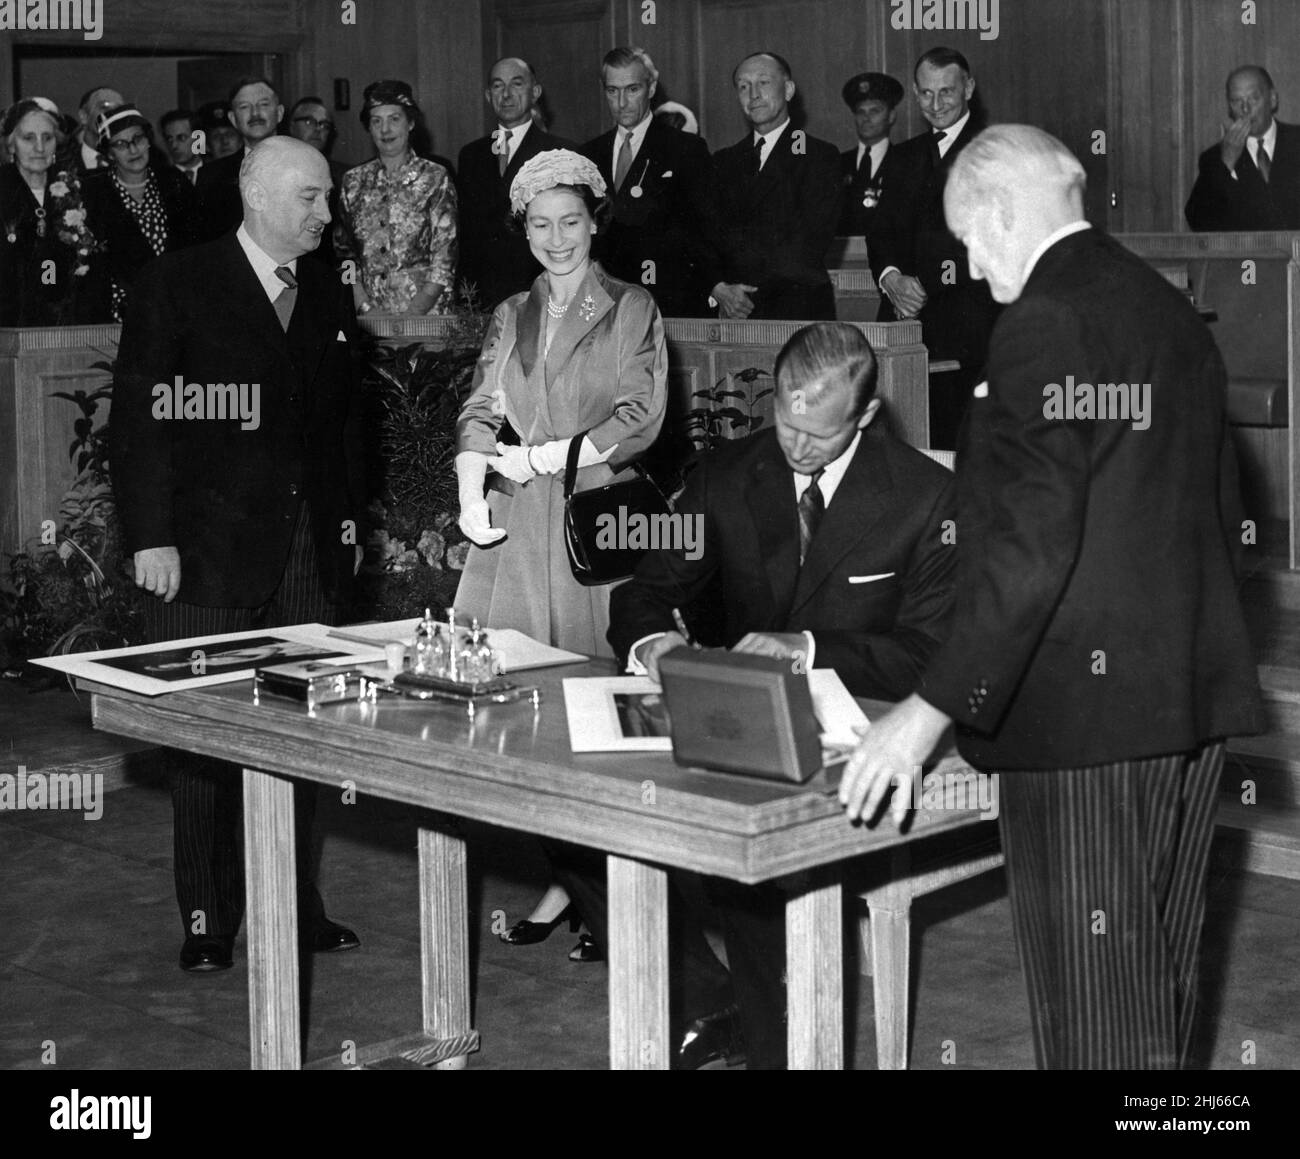 Königin Elizabeth II. Und Prinz Philip, Herzog von Edinburgh, zu Besuch in Chester. Der Herzog von Edinburgh signiert sein Porträt während des Besuchs in Chester's neuer County Hall. Die Königin hatte ihr Porträt unterzeichnet, musste aber einige Augenblicke warten, bis der Herzog seine Unterschrift vollzog. Juli 1957. Stockfoto